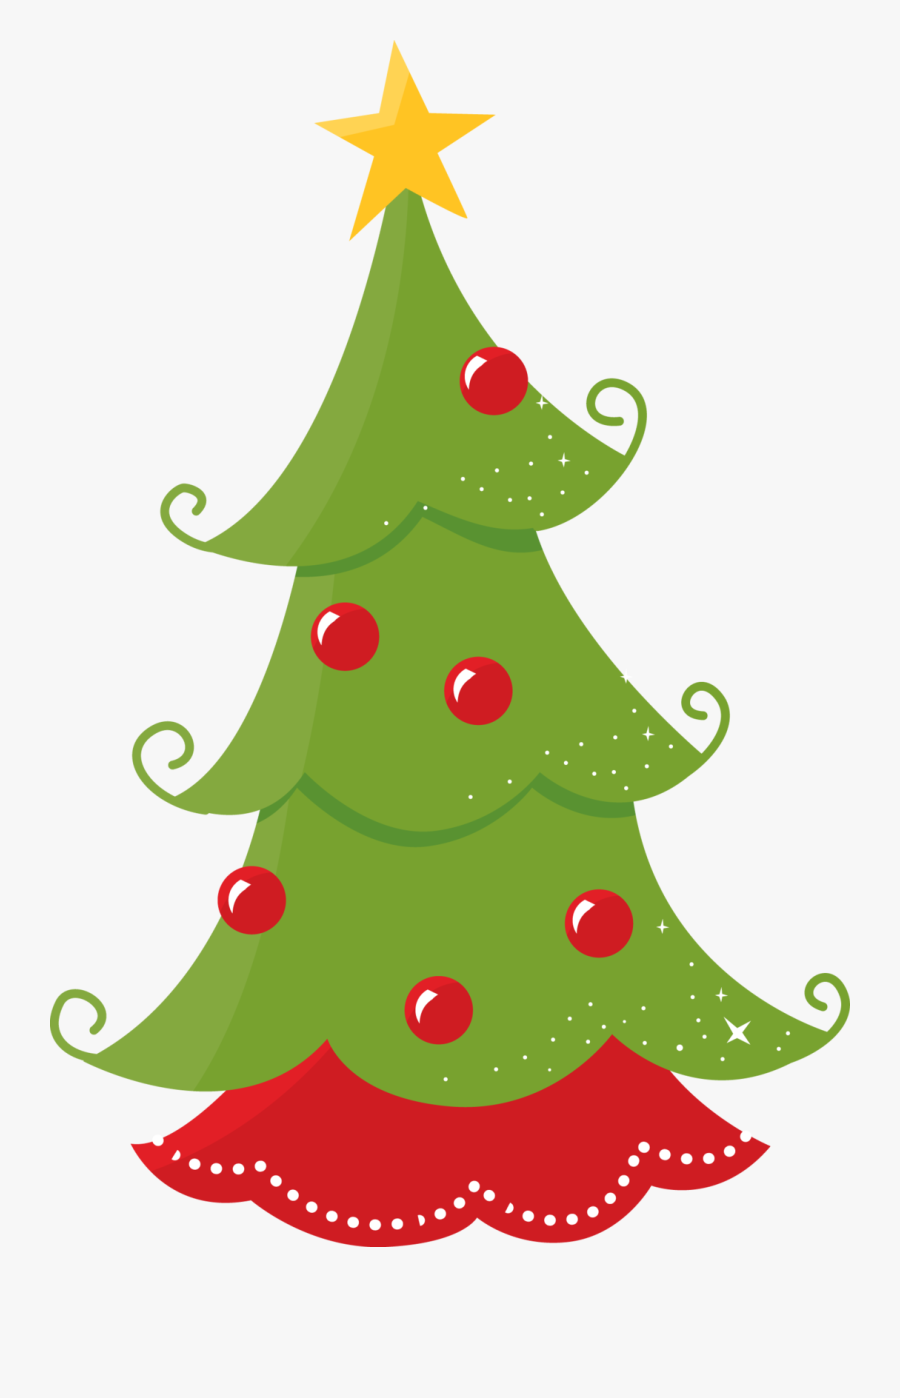 Forest Clipart Christmas Tree - Arvore De Natal Minus, Transparent Clipart